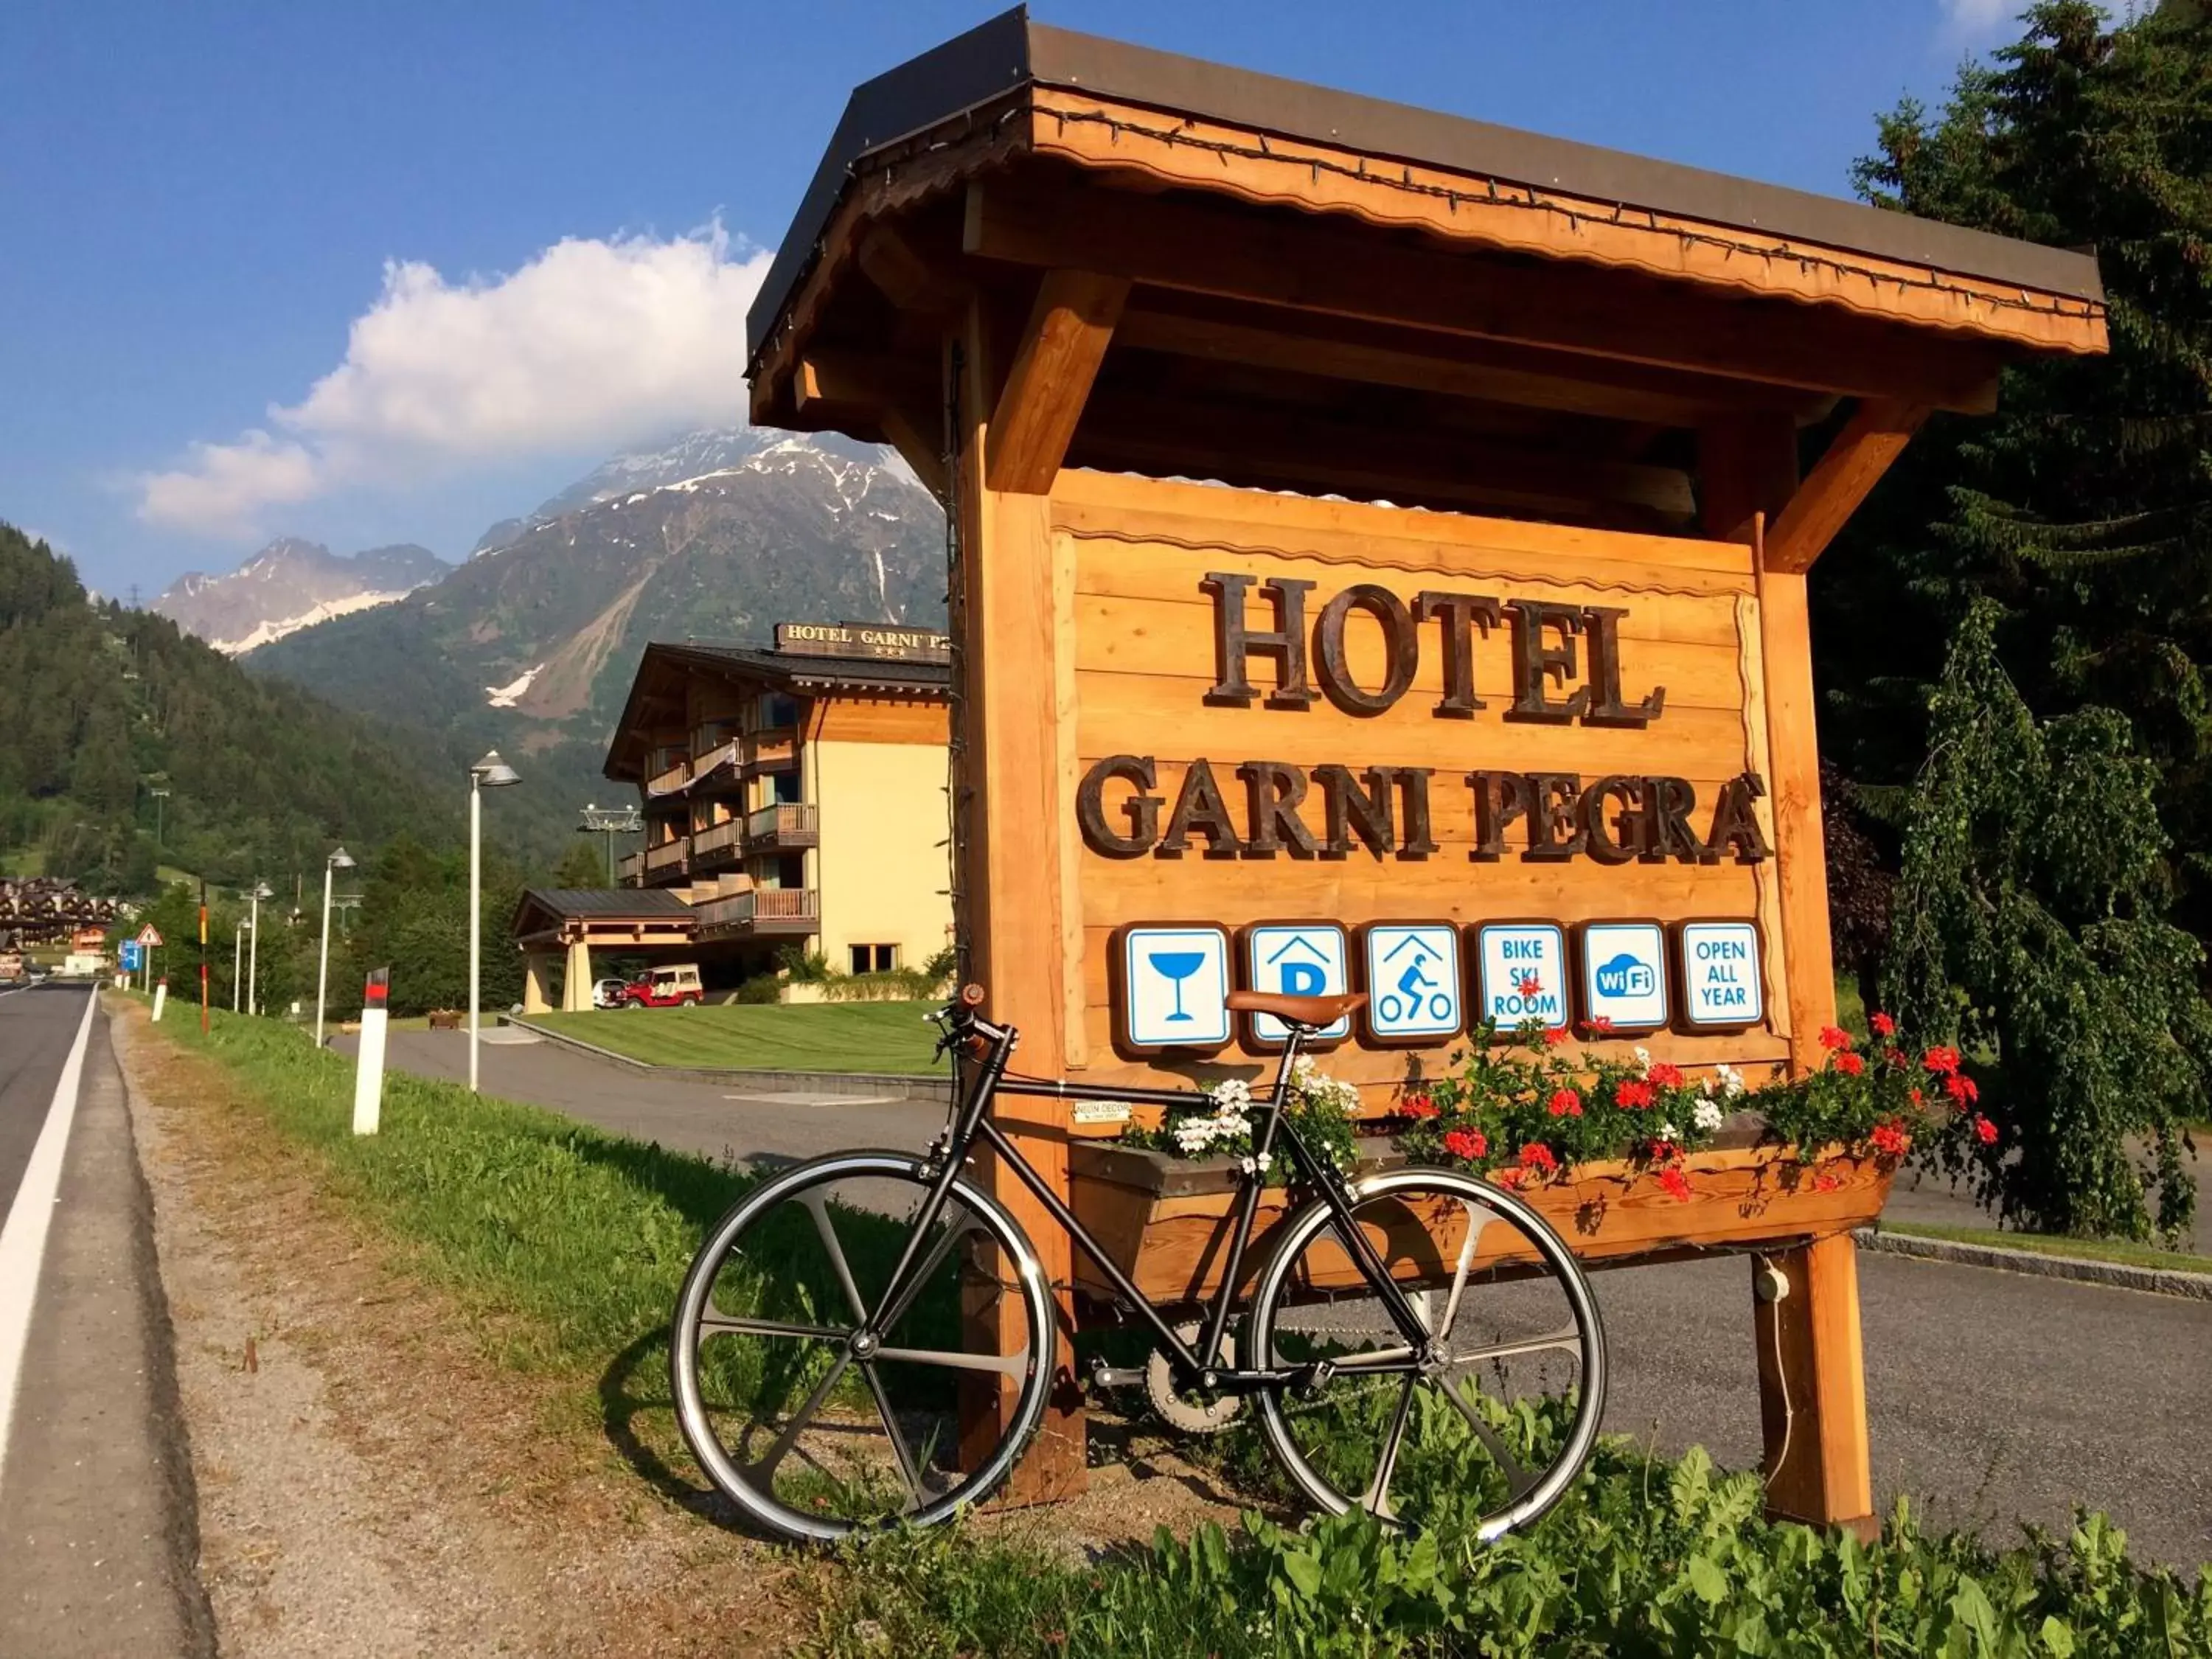 Cycling in Hotel Garni Pegrà